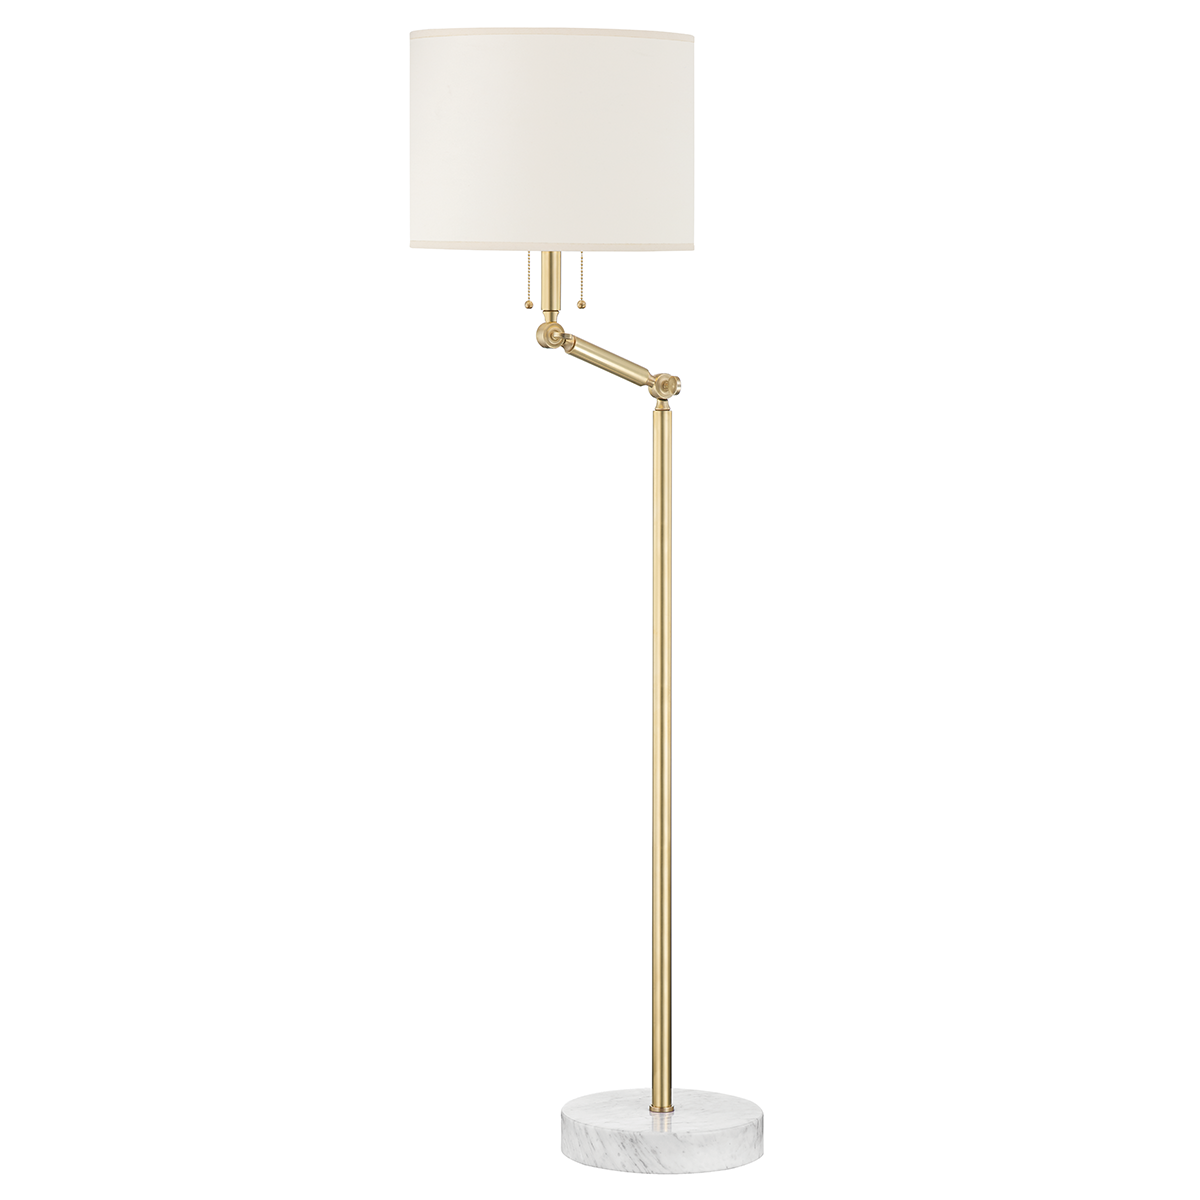 Essex 2 Light Floor Lamp